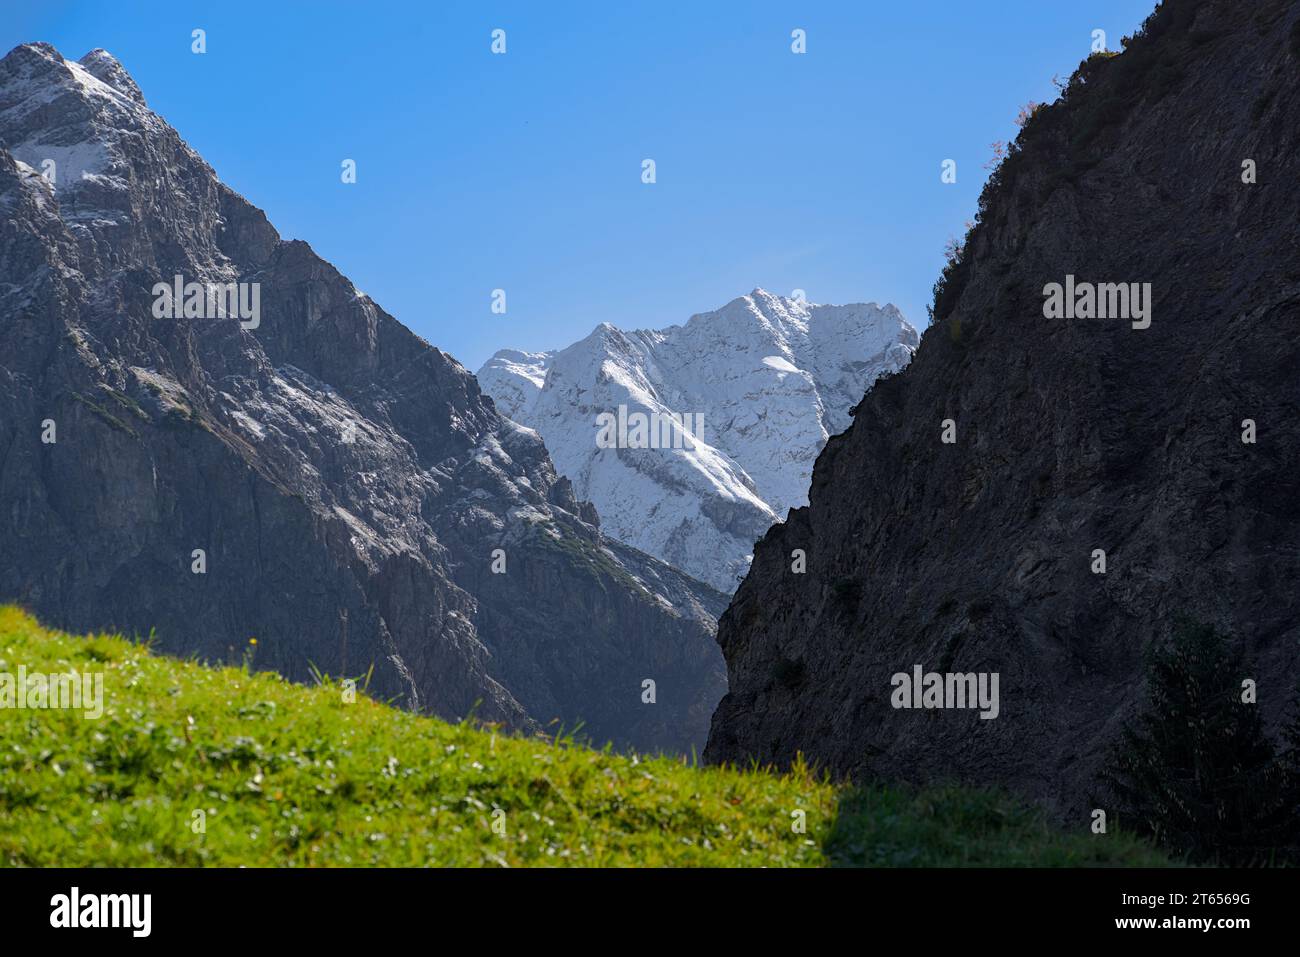 Paesaggio autunnale nelle alpi. La grosse Walsertal è impressionante in ogni stagione. Qui la prima neve sulla cima della montagna. Foto Stock